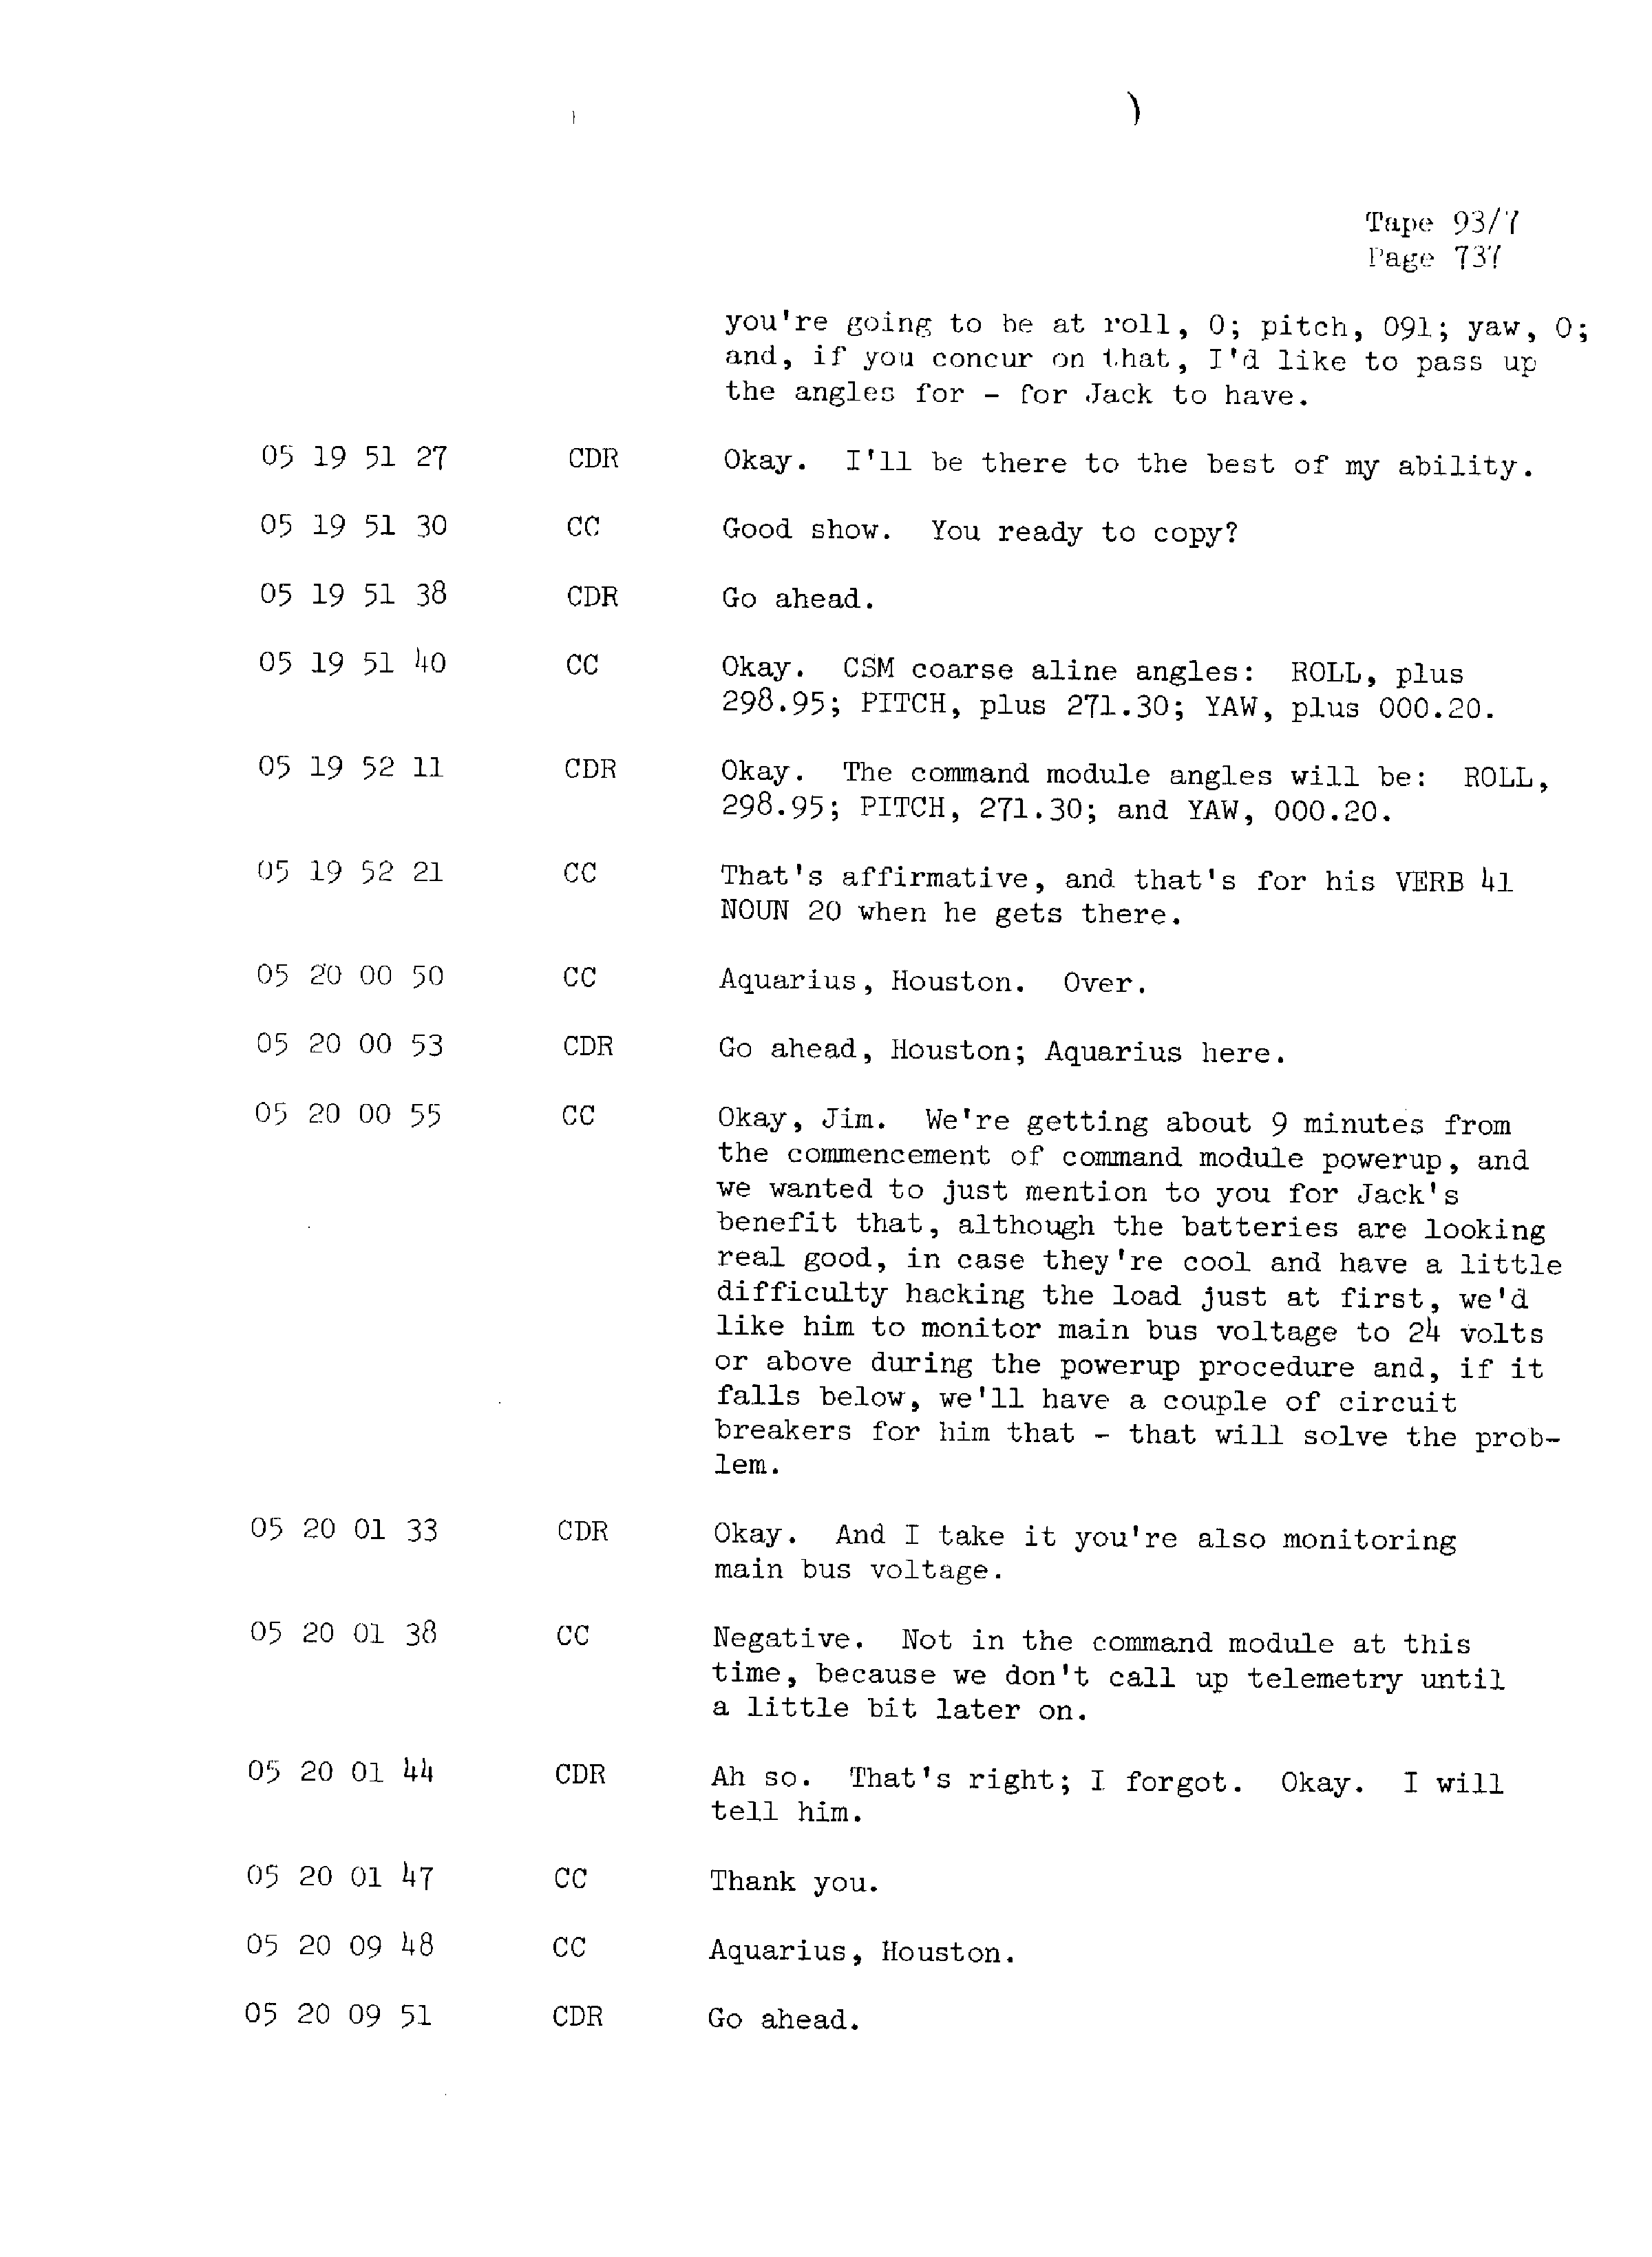 Page 744 of Apollo 13’s original transcript